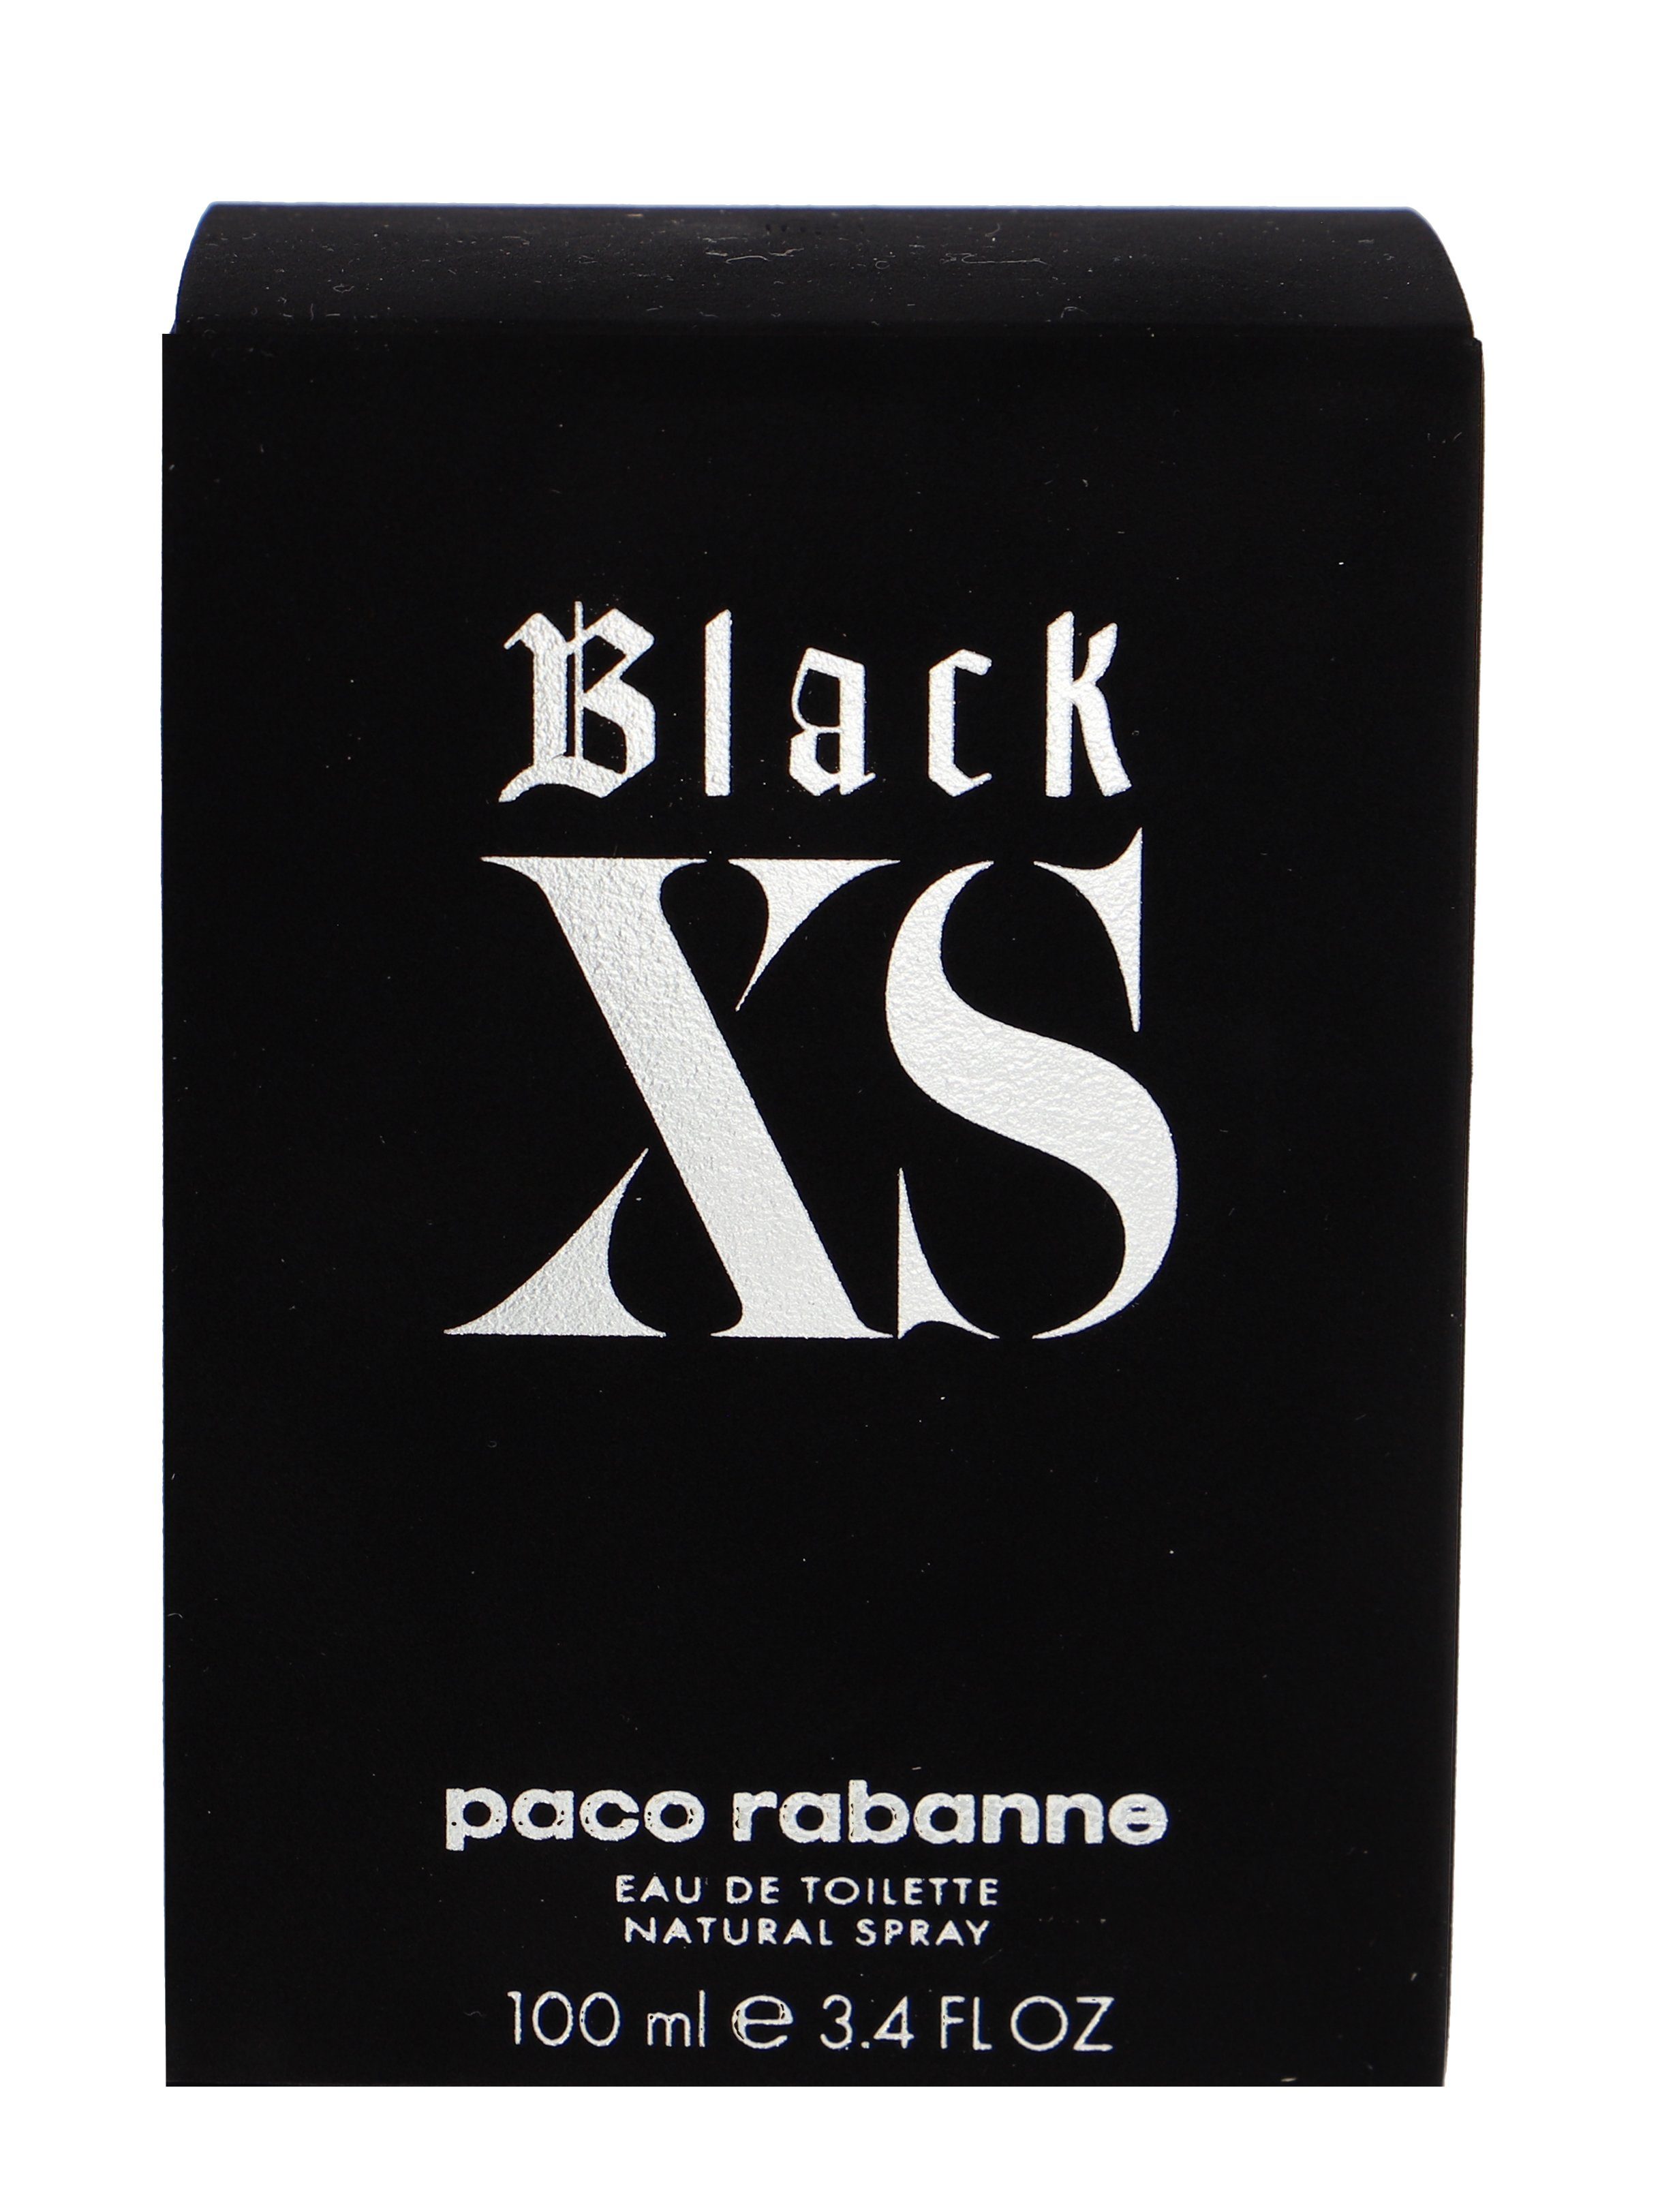 Rabanne rabanne XS Paco paco de Black Eau Toilette